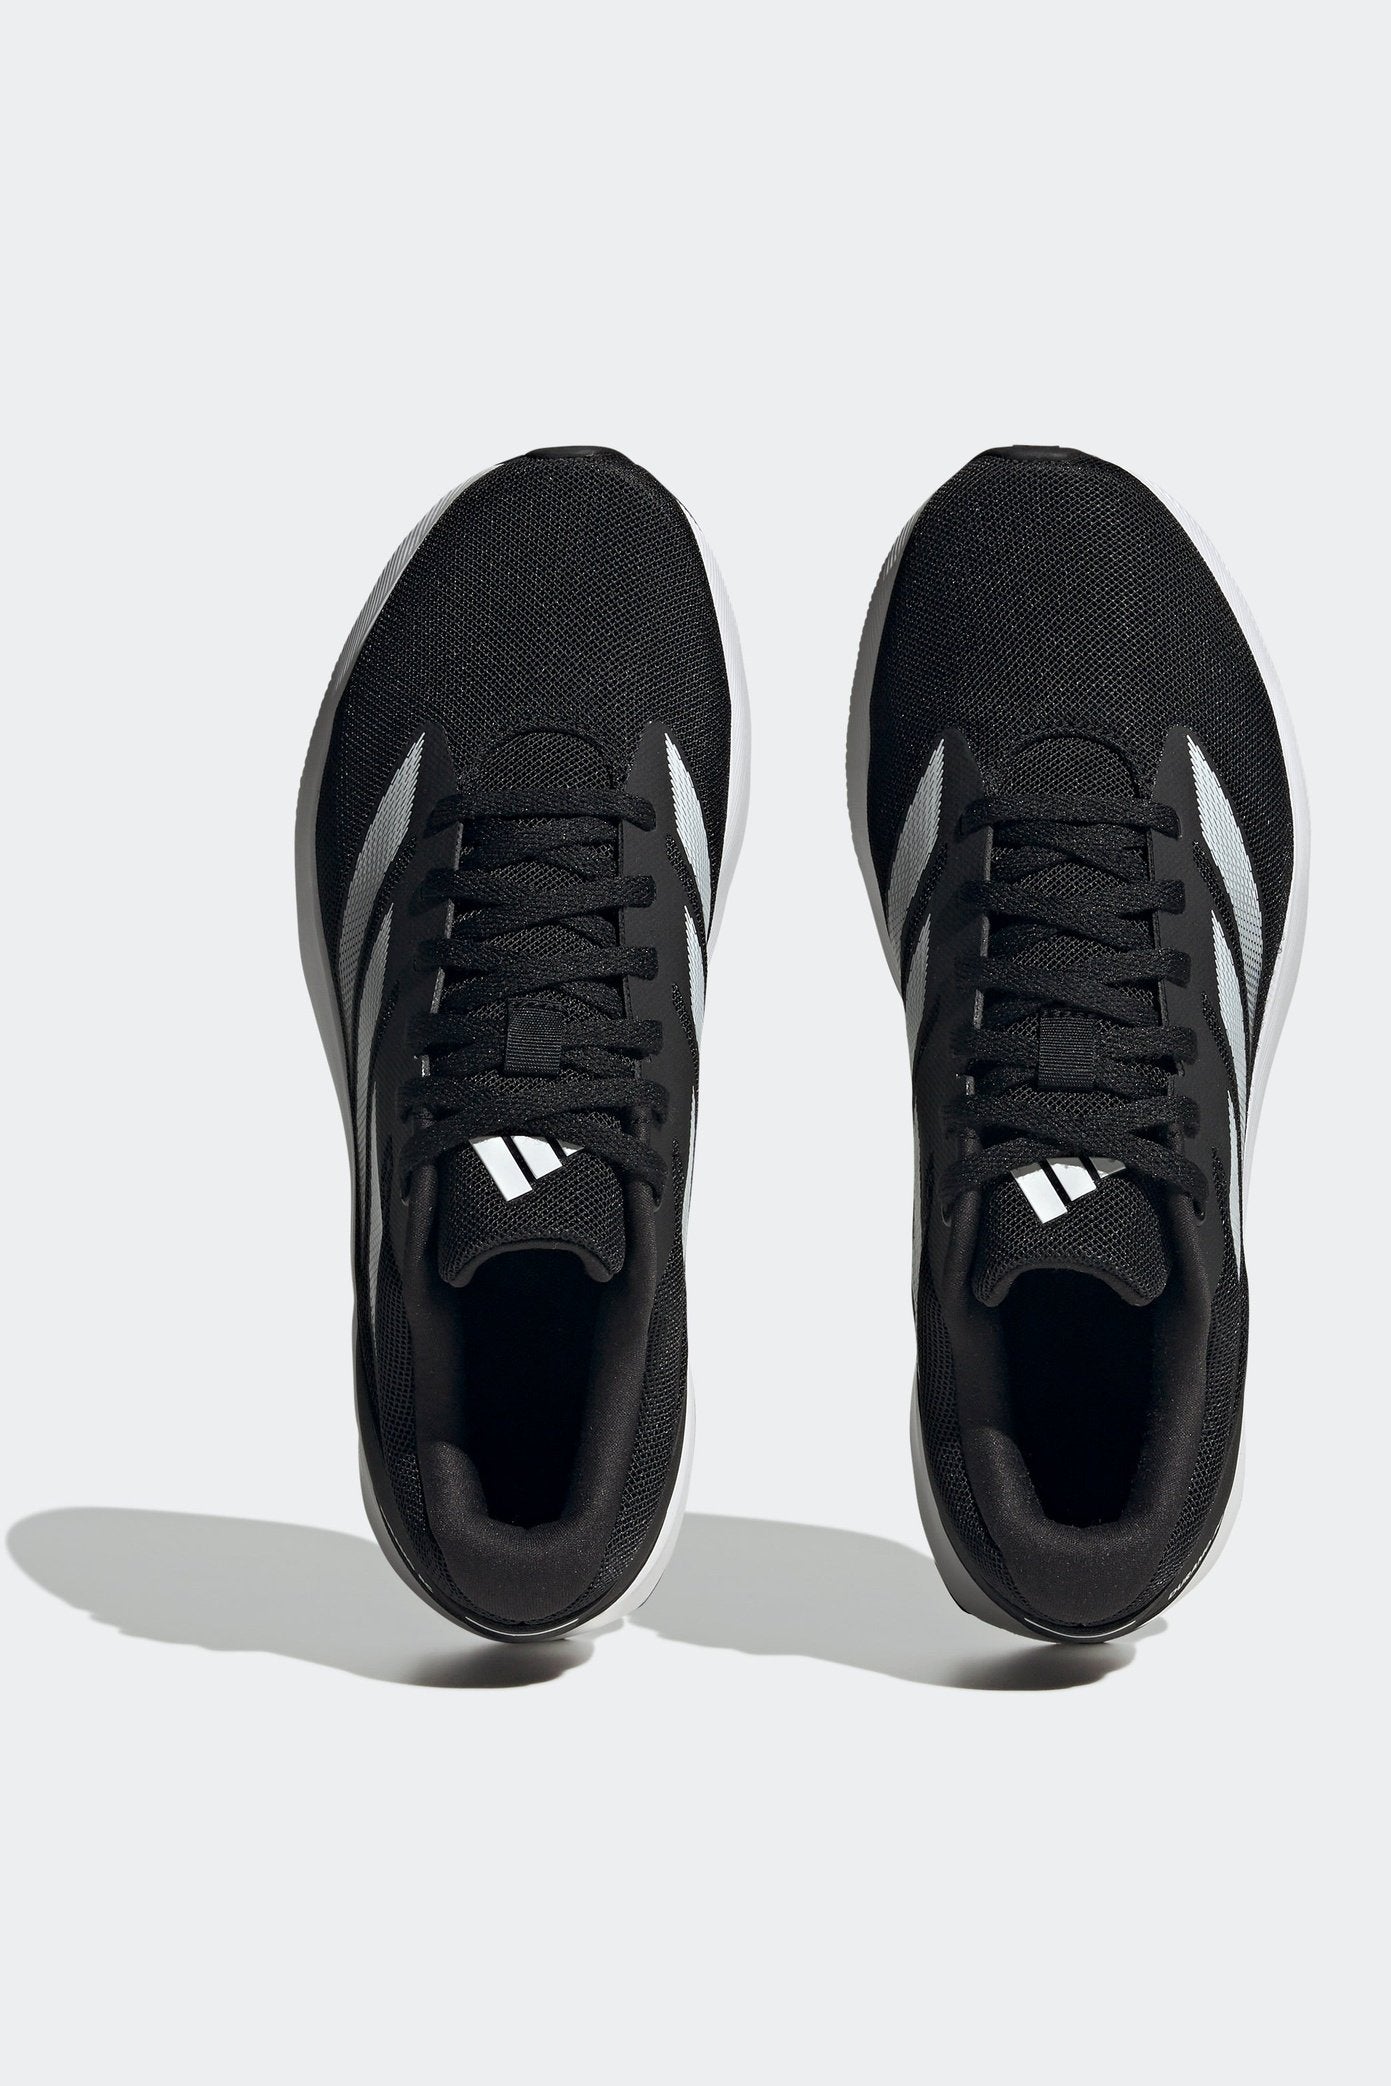 נעלי ספורט לגברים DURAMO RC SHOES בצבע שחור ולבן